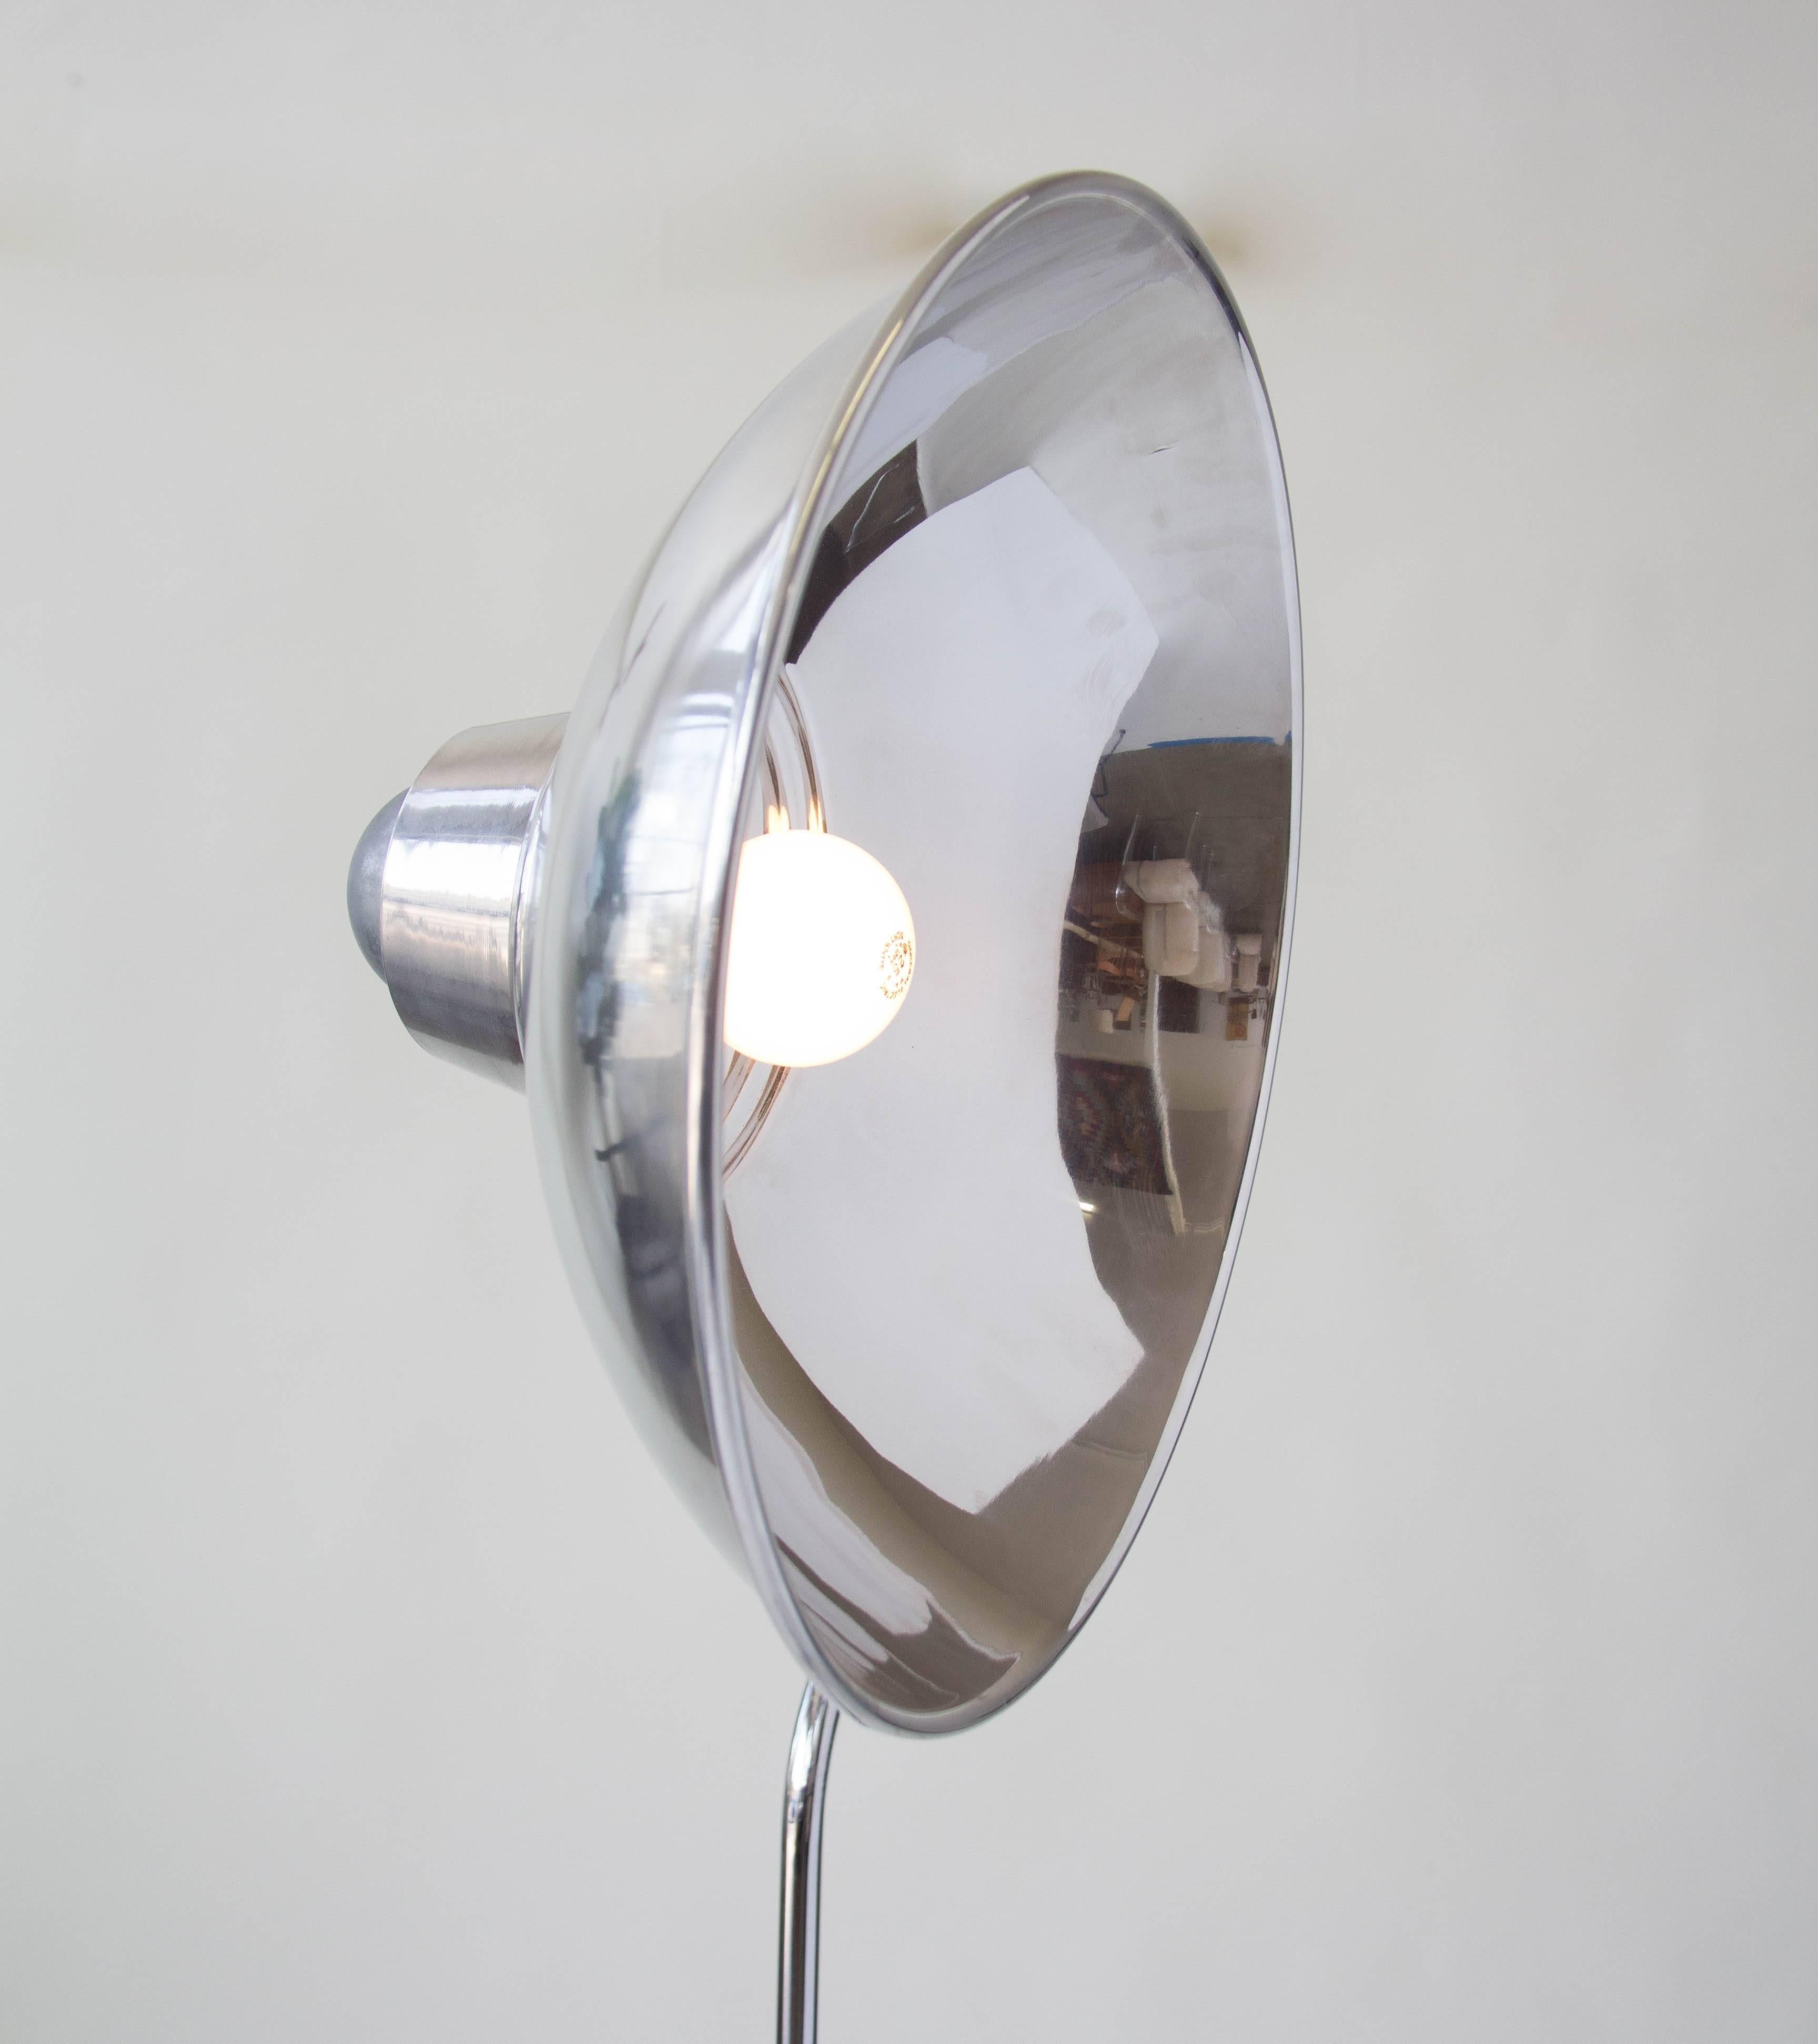 20th Century Industrial Aluminum Floor Lamp